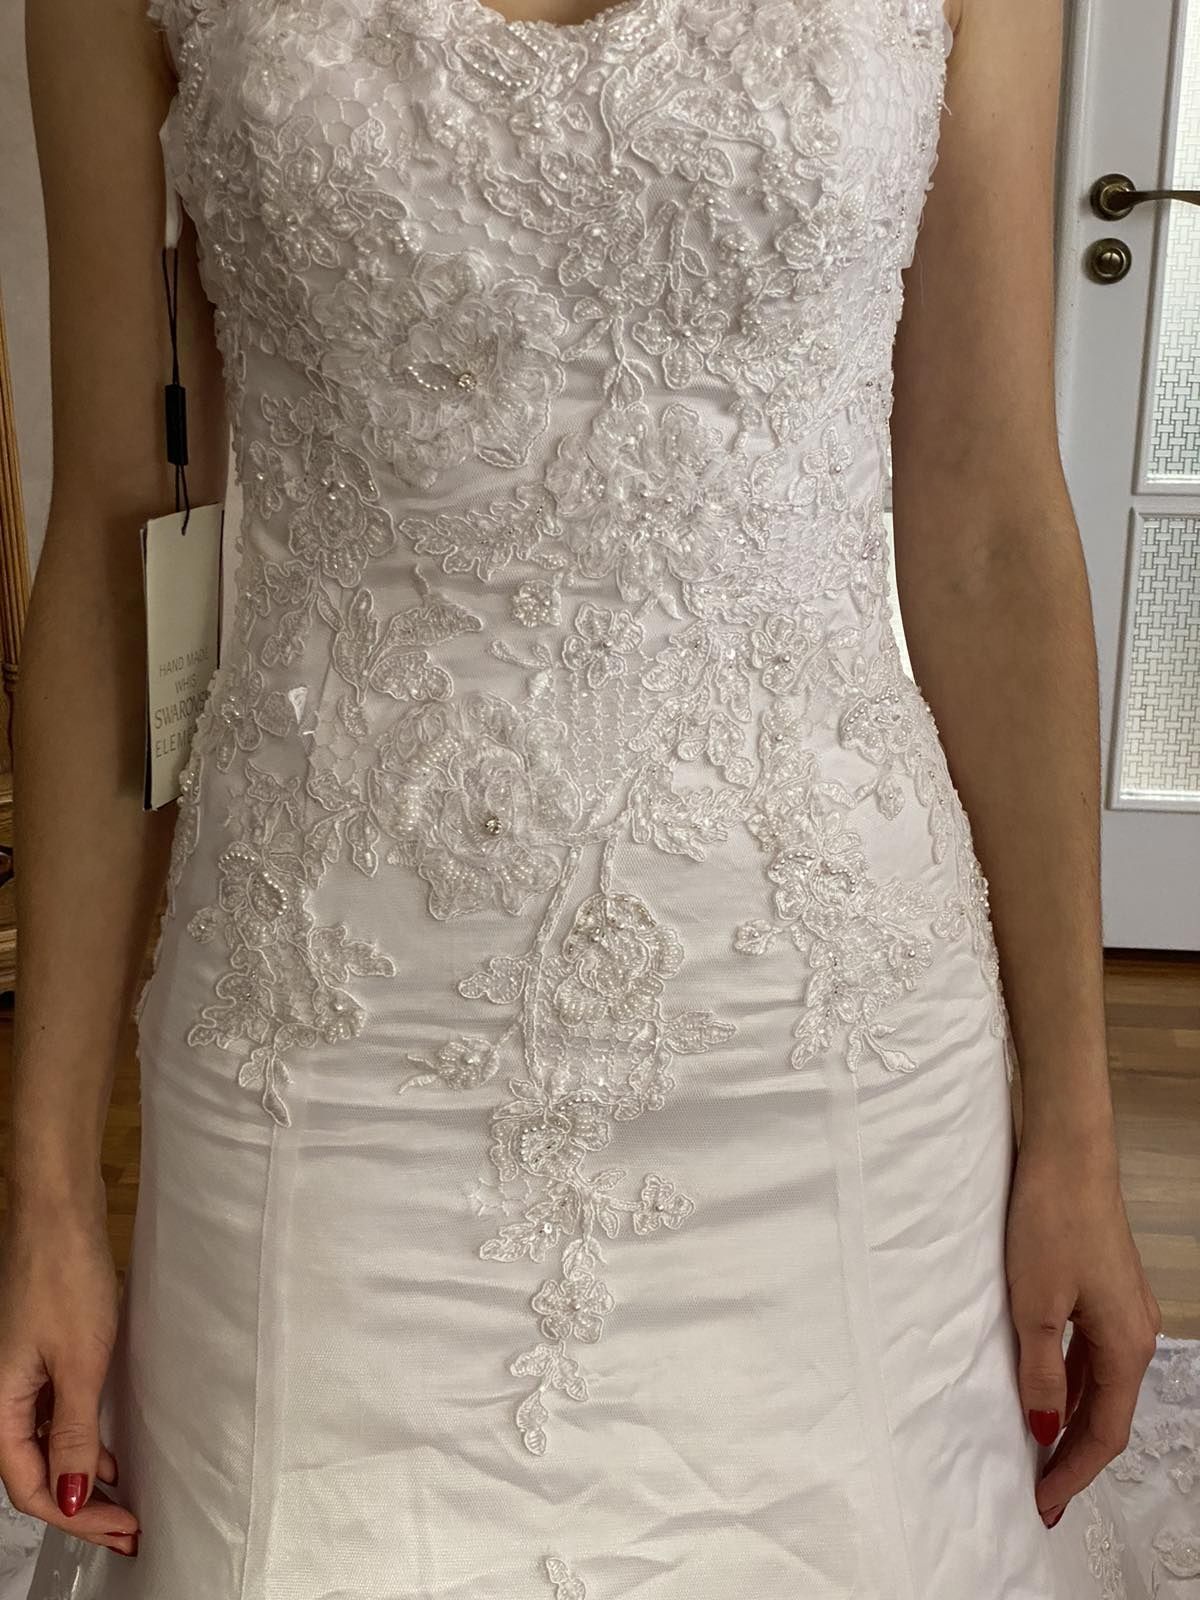 Продається сукня весільна